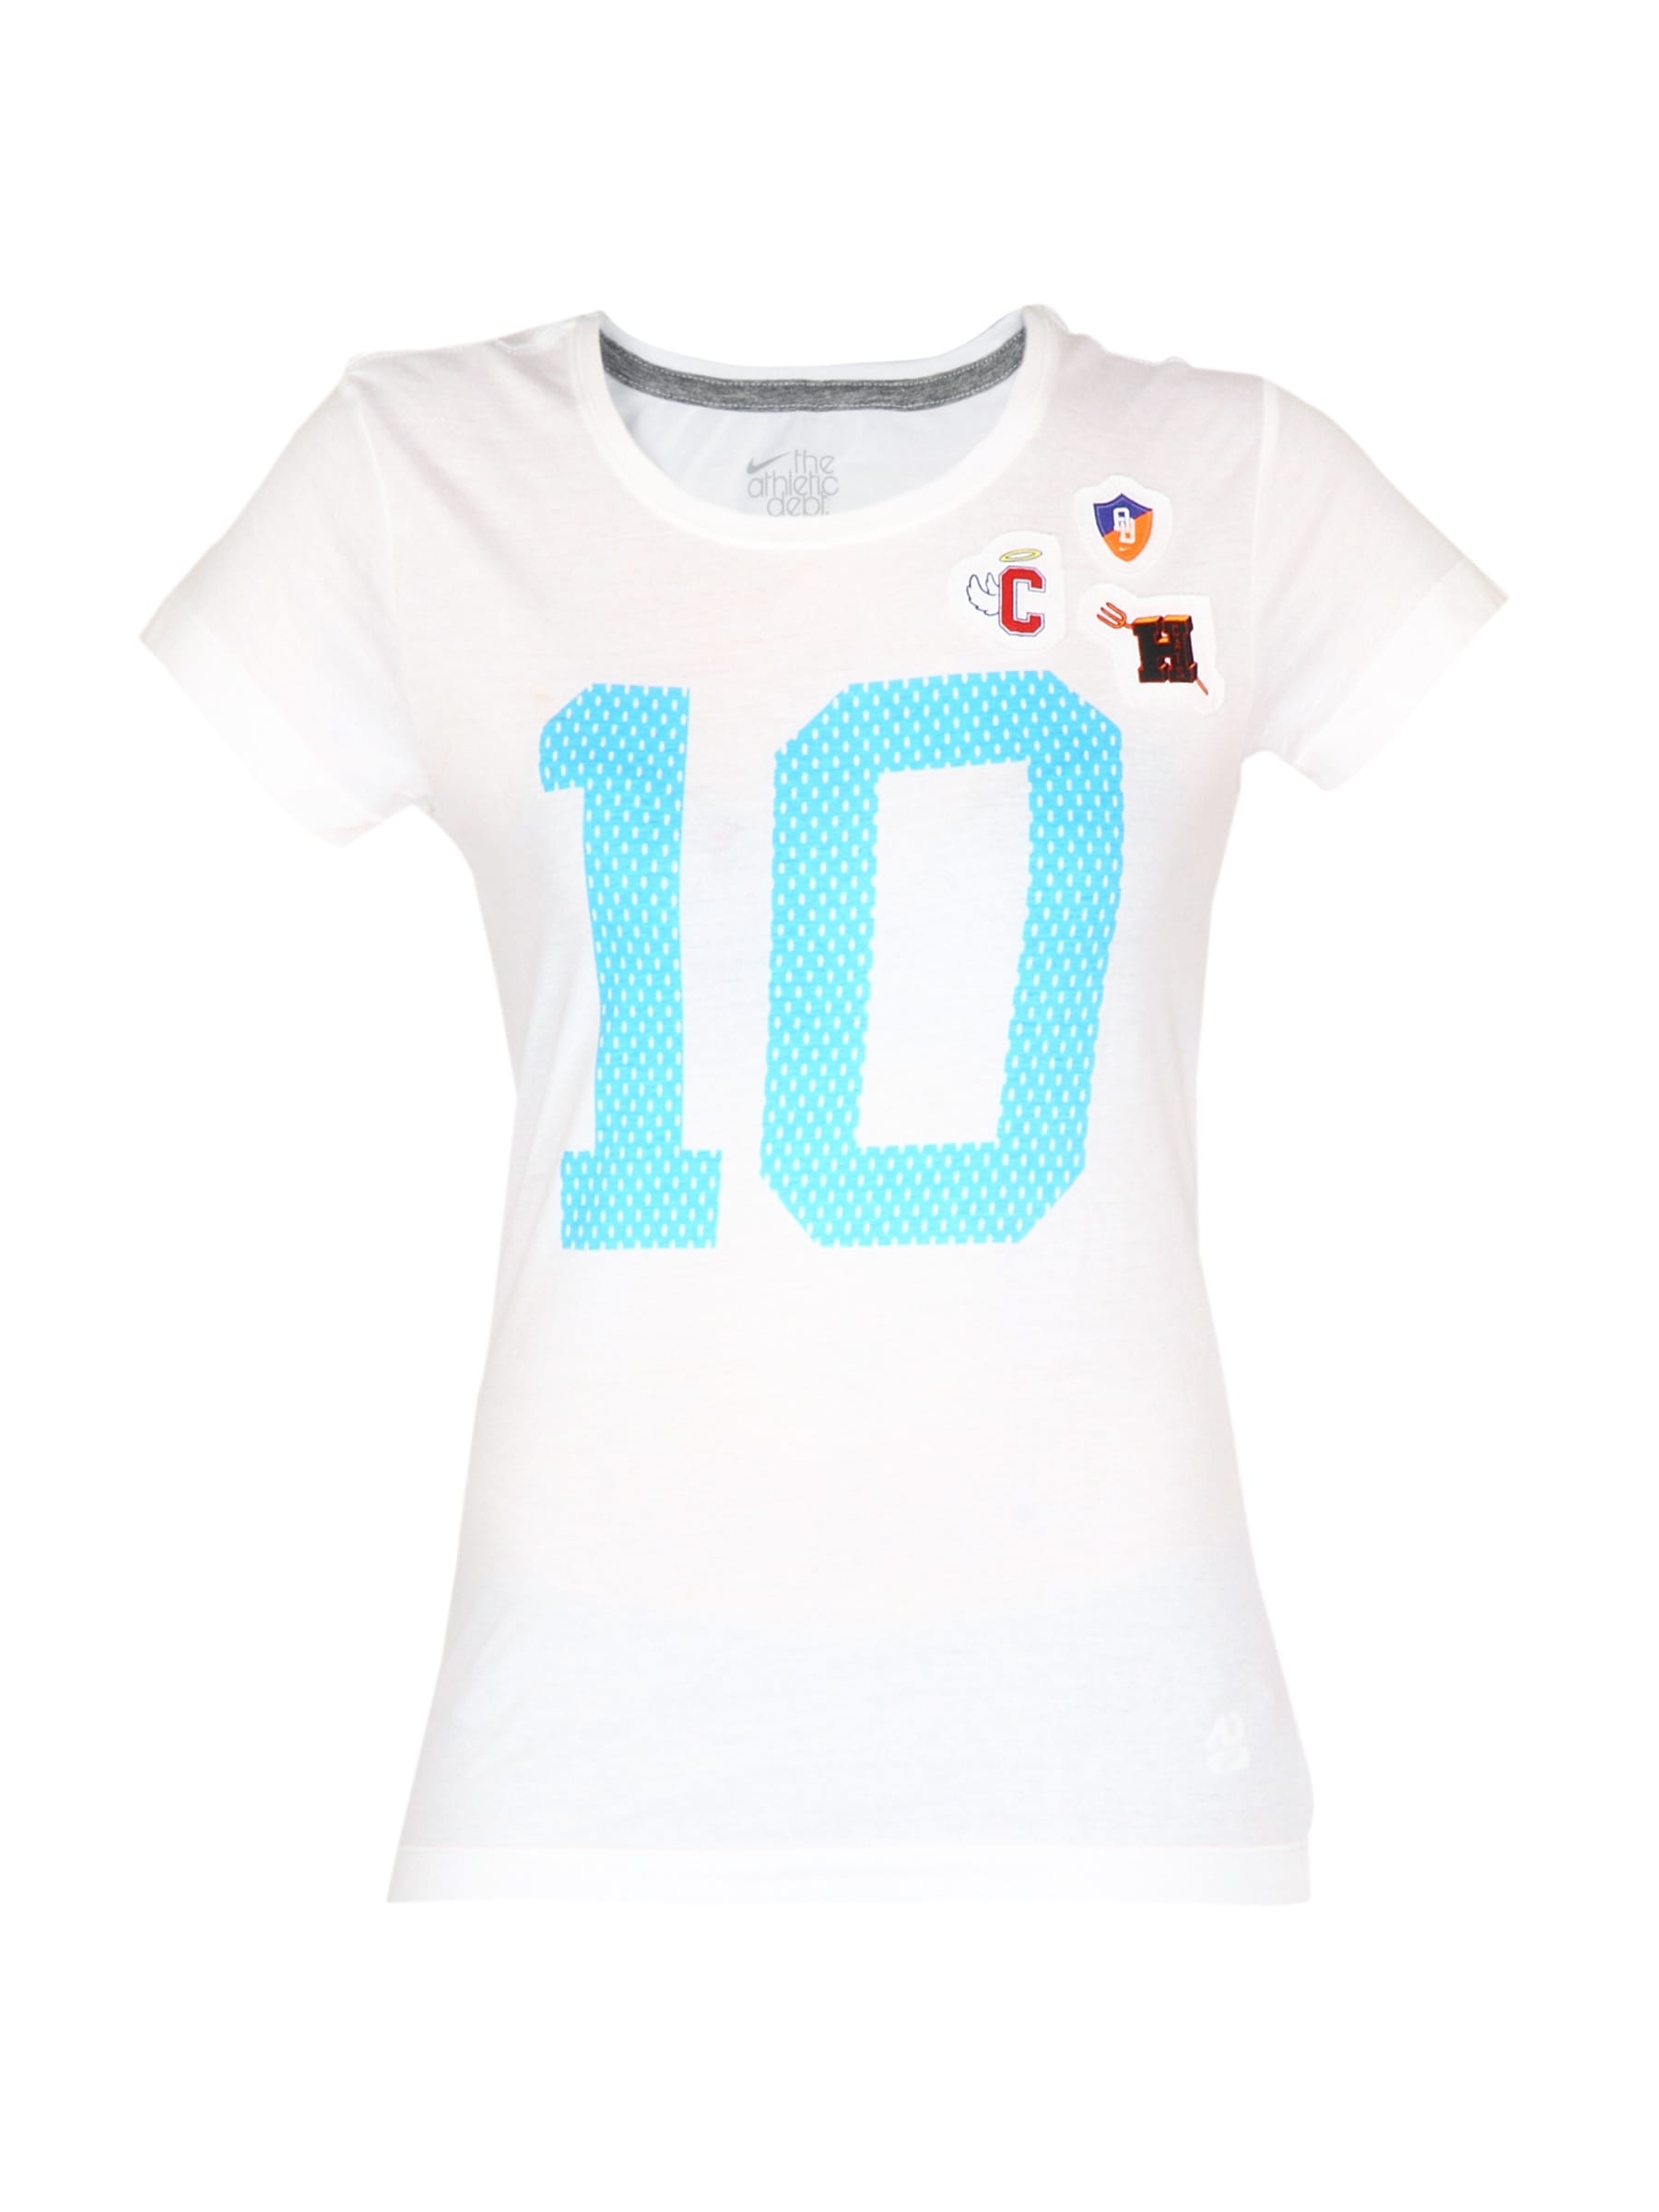 Nike Women White Casual T-shirt